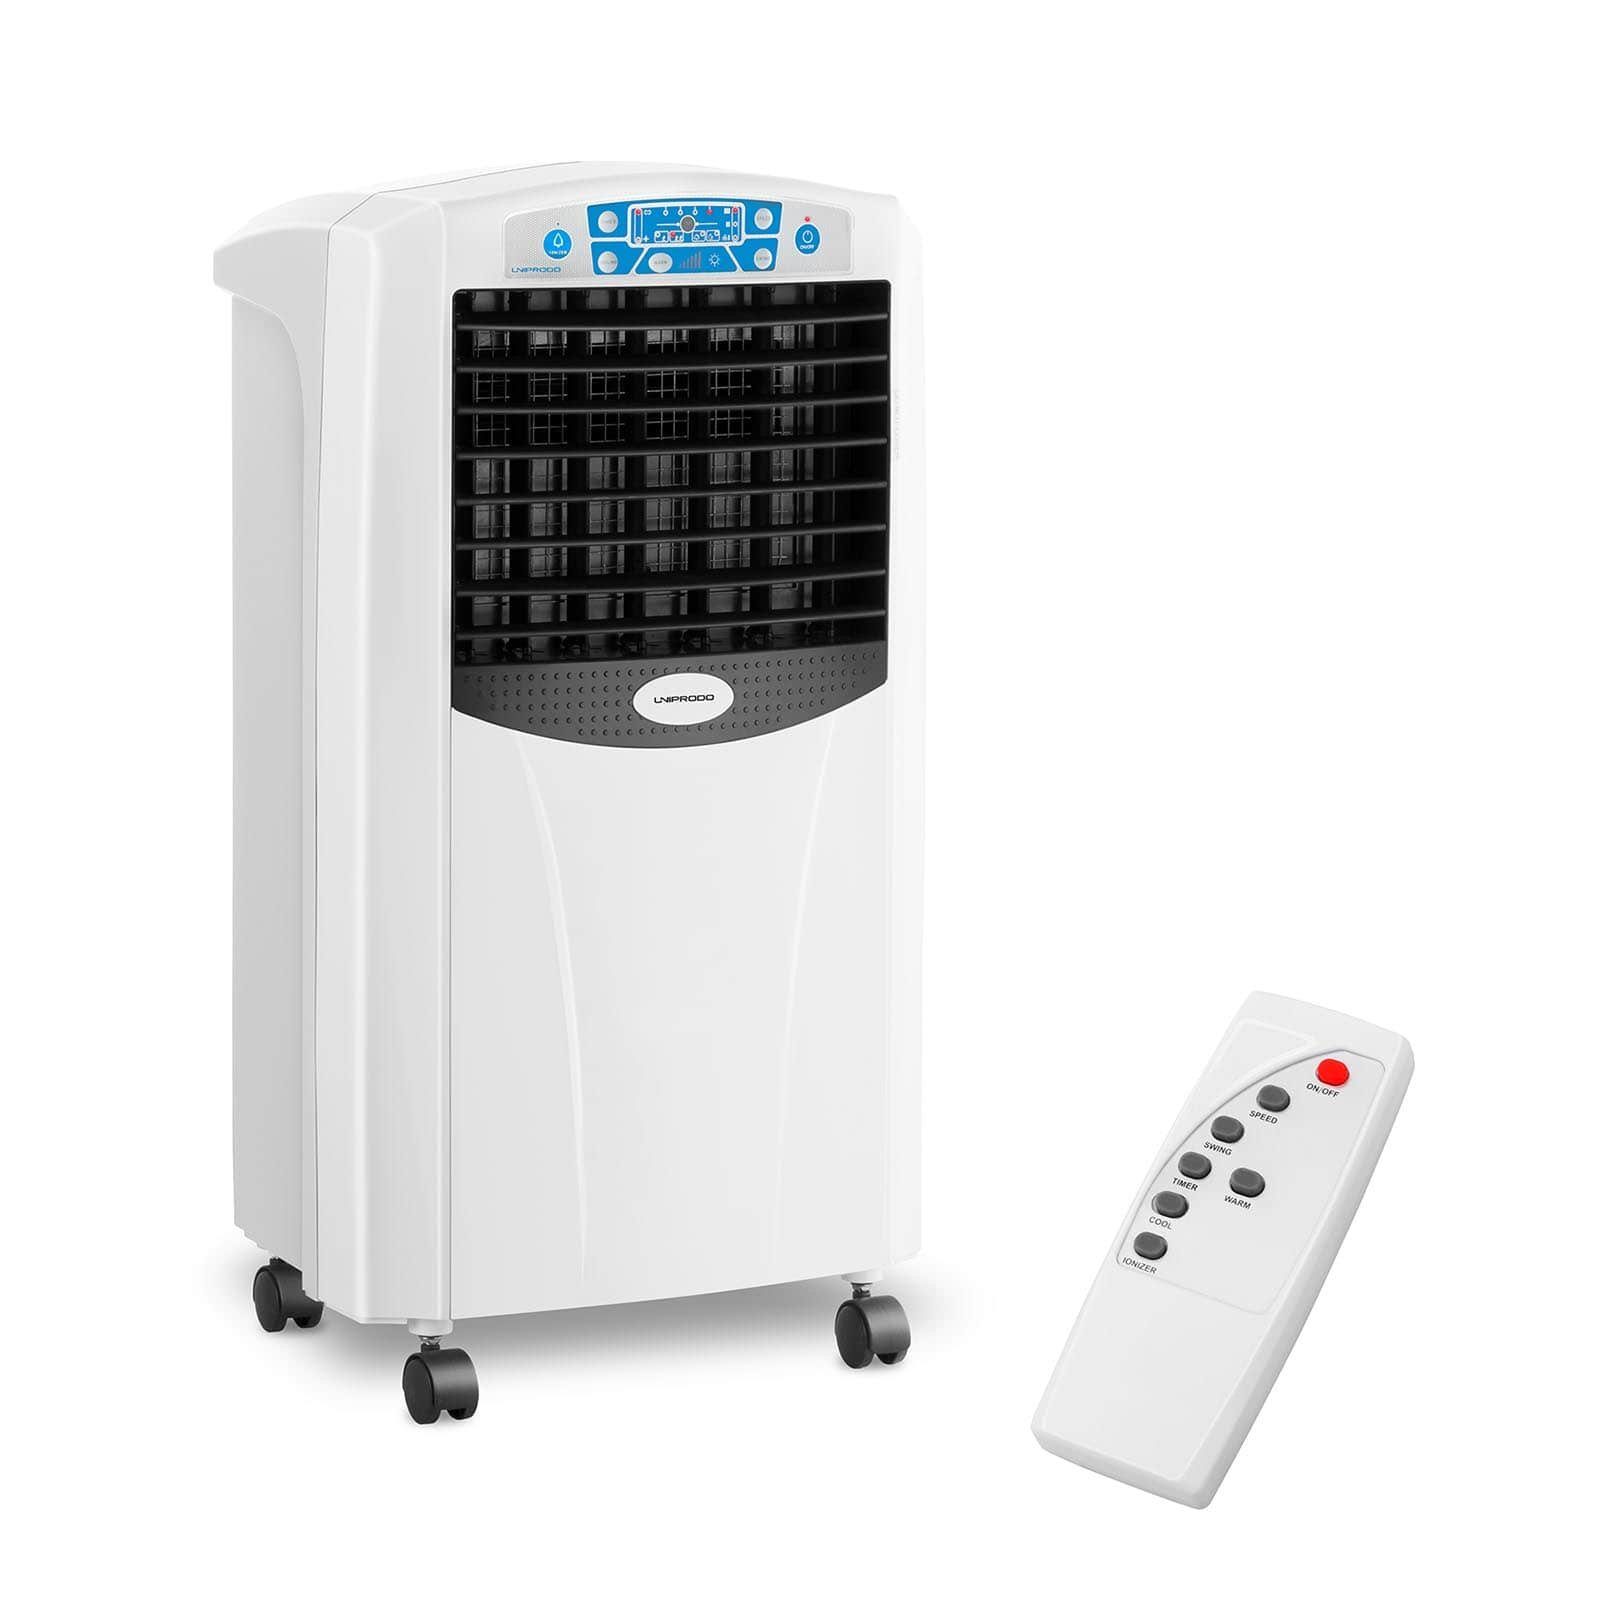 Uniprodo Ventilatorkombigerät Luftkühler mobil mit Heizfunktion - 5 in 1 - 6 L Wassertank | Standventilatoren